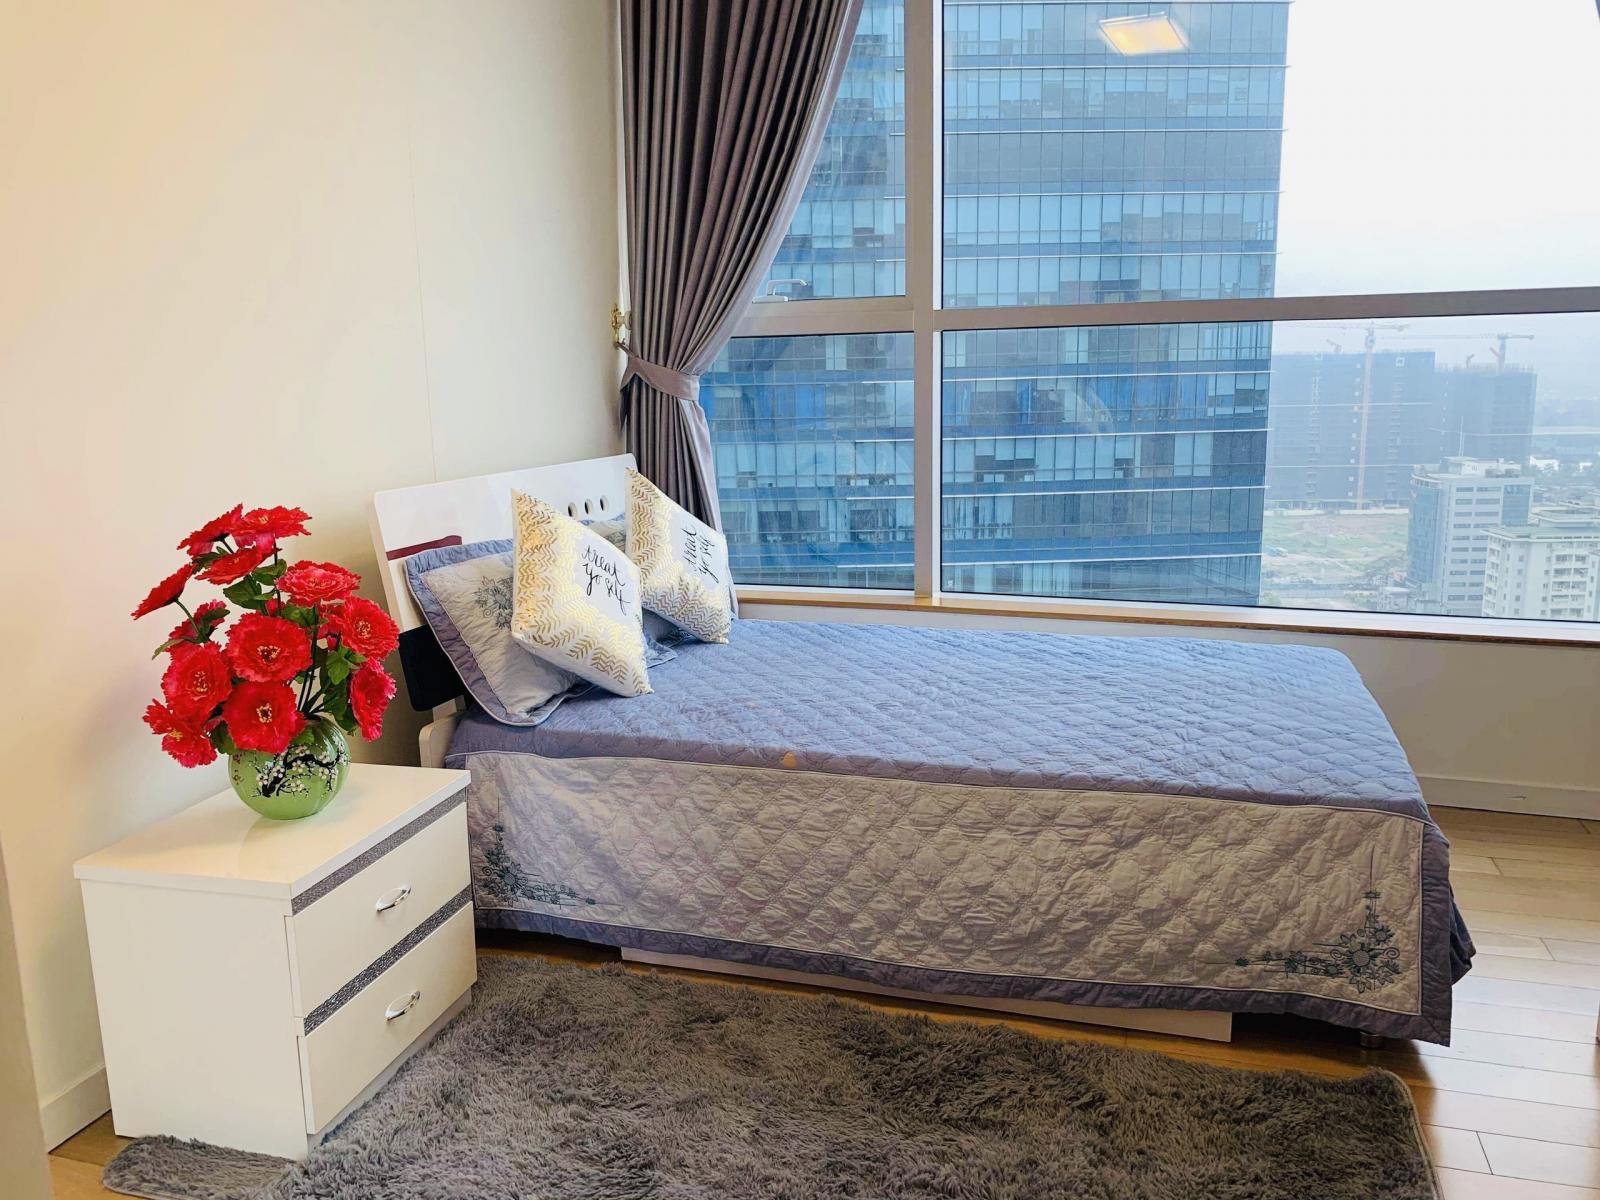 Cho thuê căn hộ 3 phòng ngủ chung cư Keangnam full nội thất cao cấp, vào ở được ngay (ảnh thật) 1010525